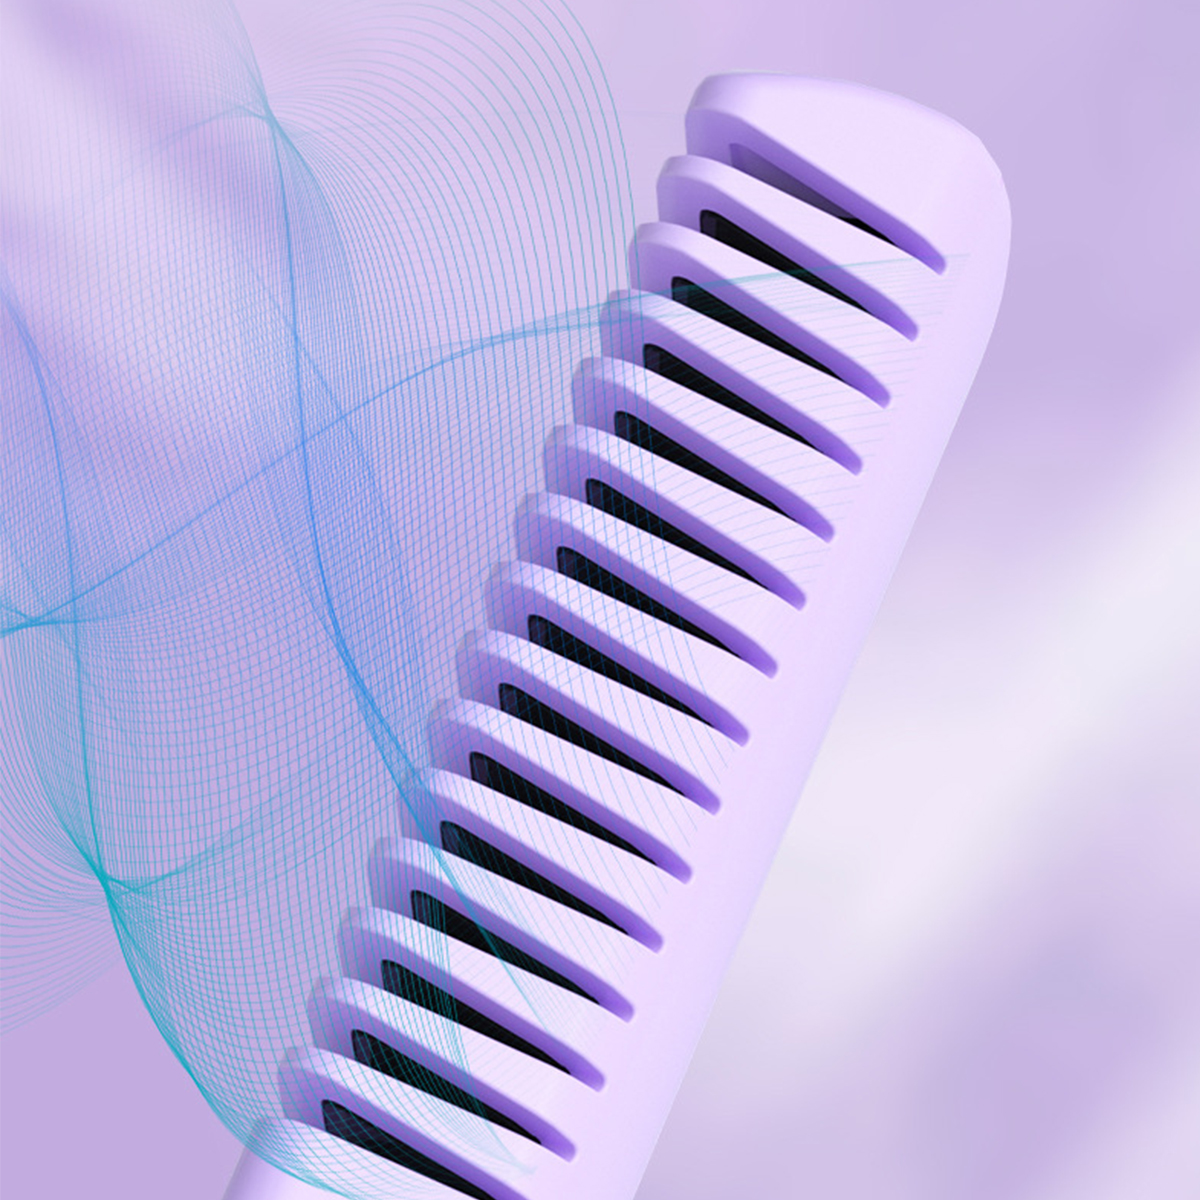 BRIGHTAKE Drahtloser Haarglätter-Kamm Kompakt und Haarglätter, Temperaturstufen: | 3 | Keramikbeschichtung USB-Aufladbar